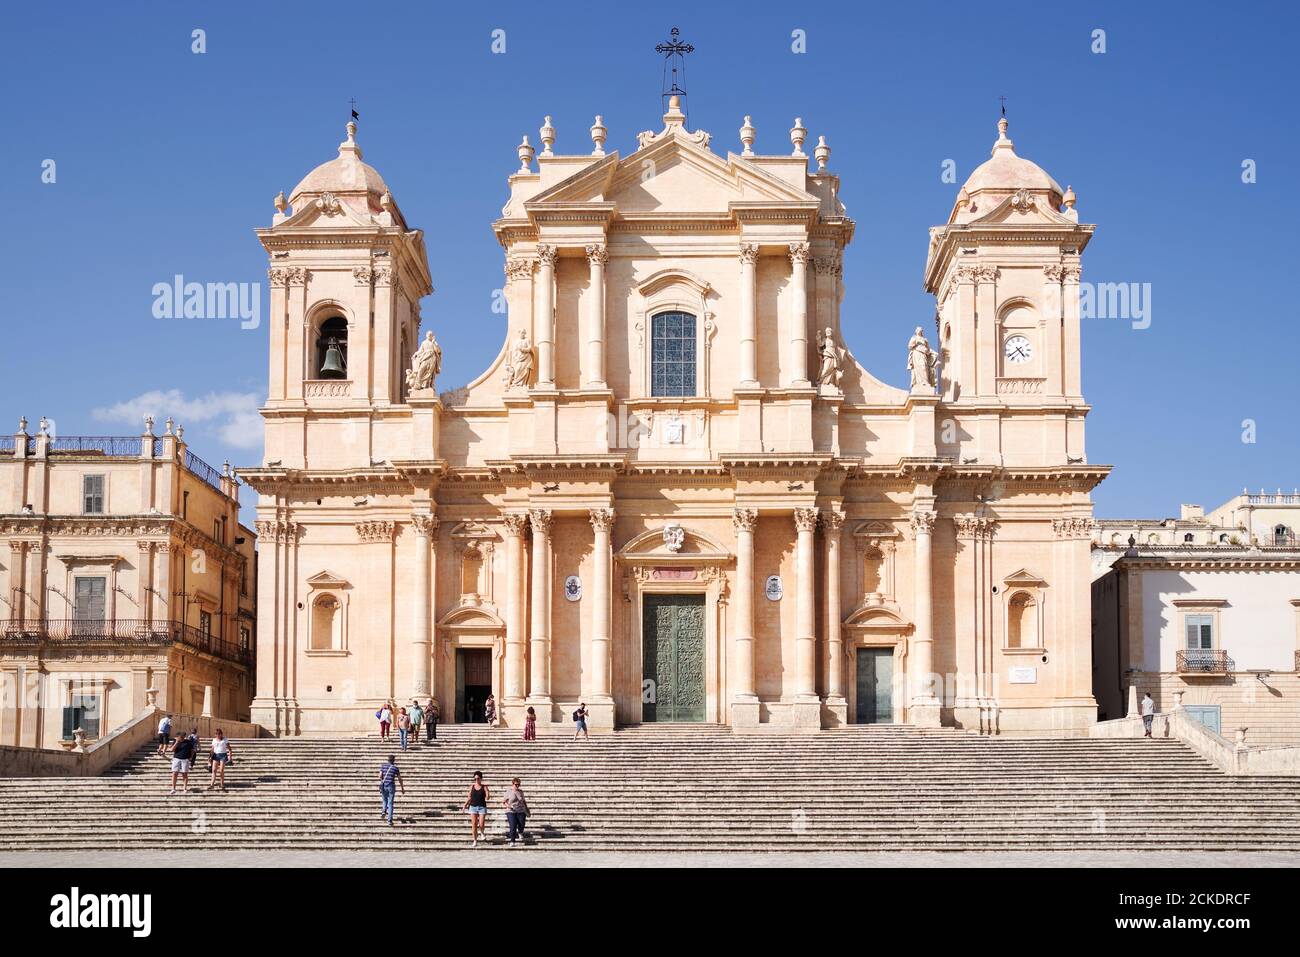 Facciata della Cattedrale di noto in una bella, luminosa giornata estiva - Sicilia, Italia Foto Stock